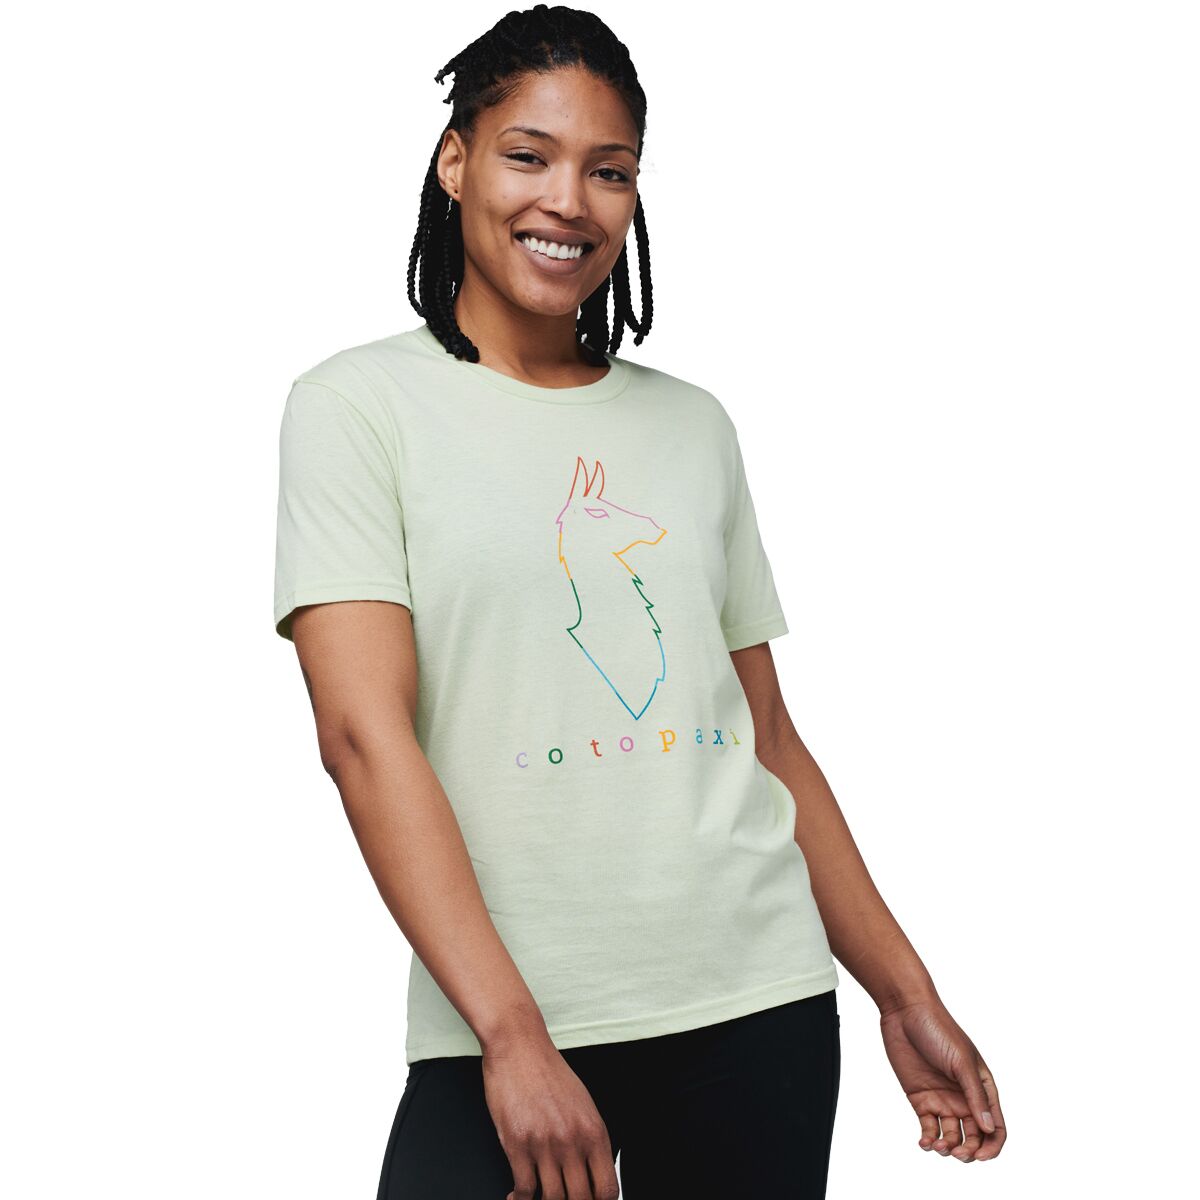 Cotopaxi Electric Llama T-Shirt - Women's